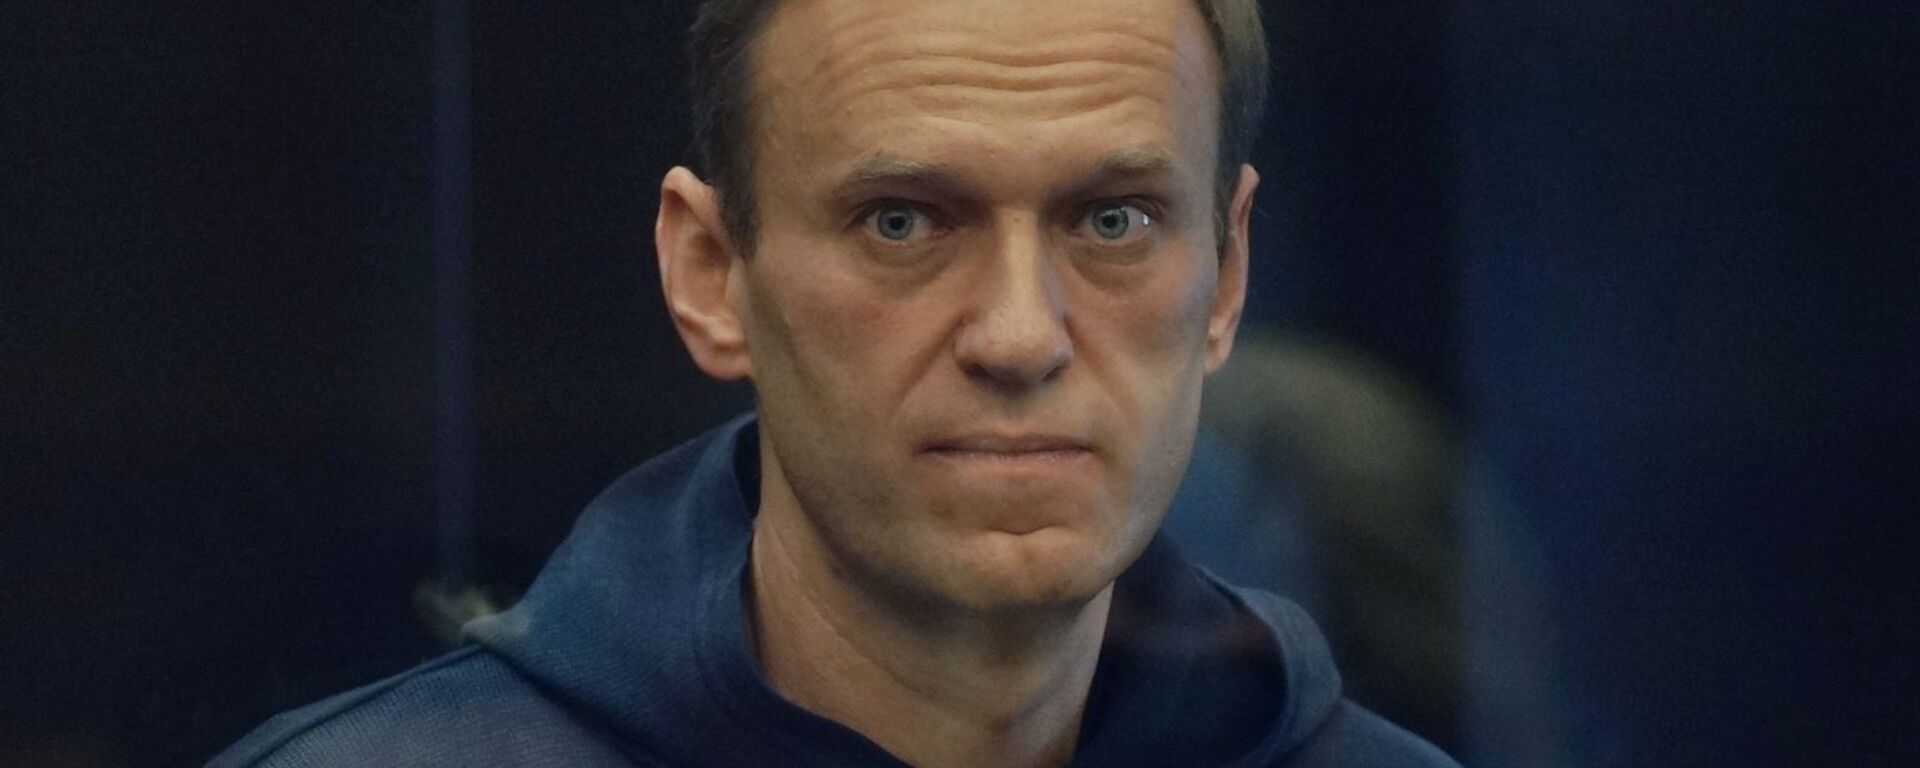 Алексей Навальный на заседании Московского городского суда - Sputnik 日本, 1920, 04.02.2021